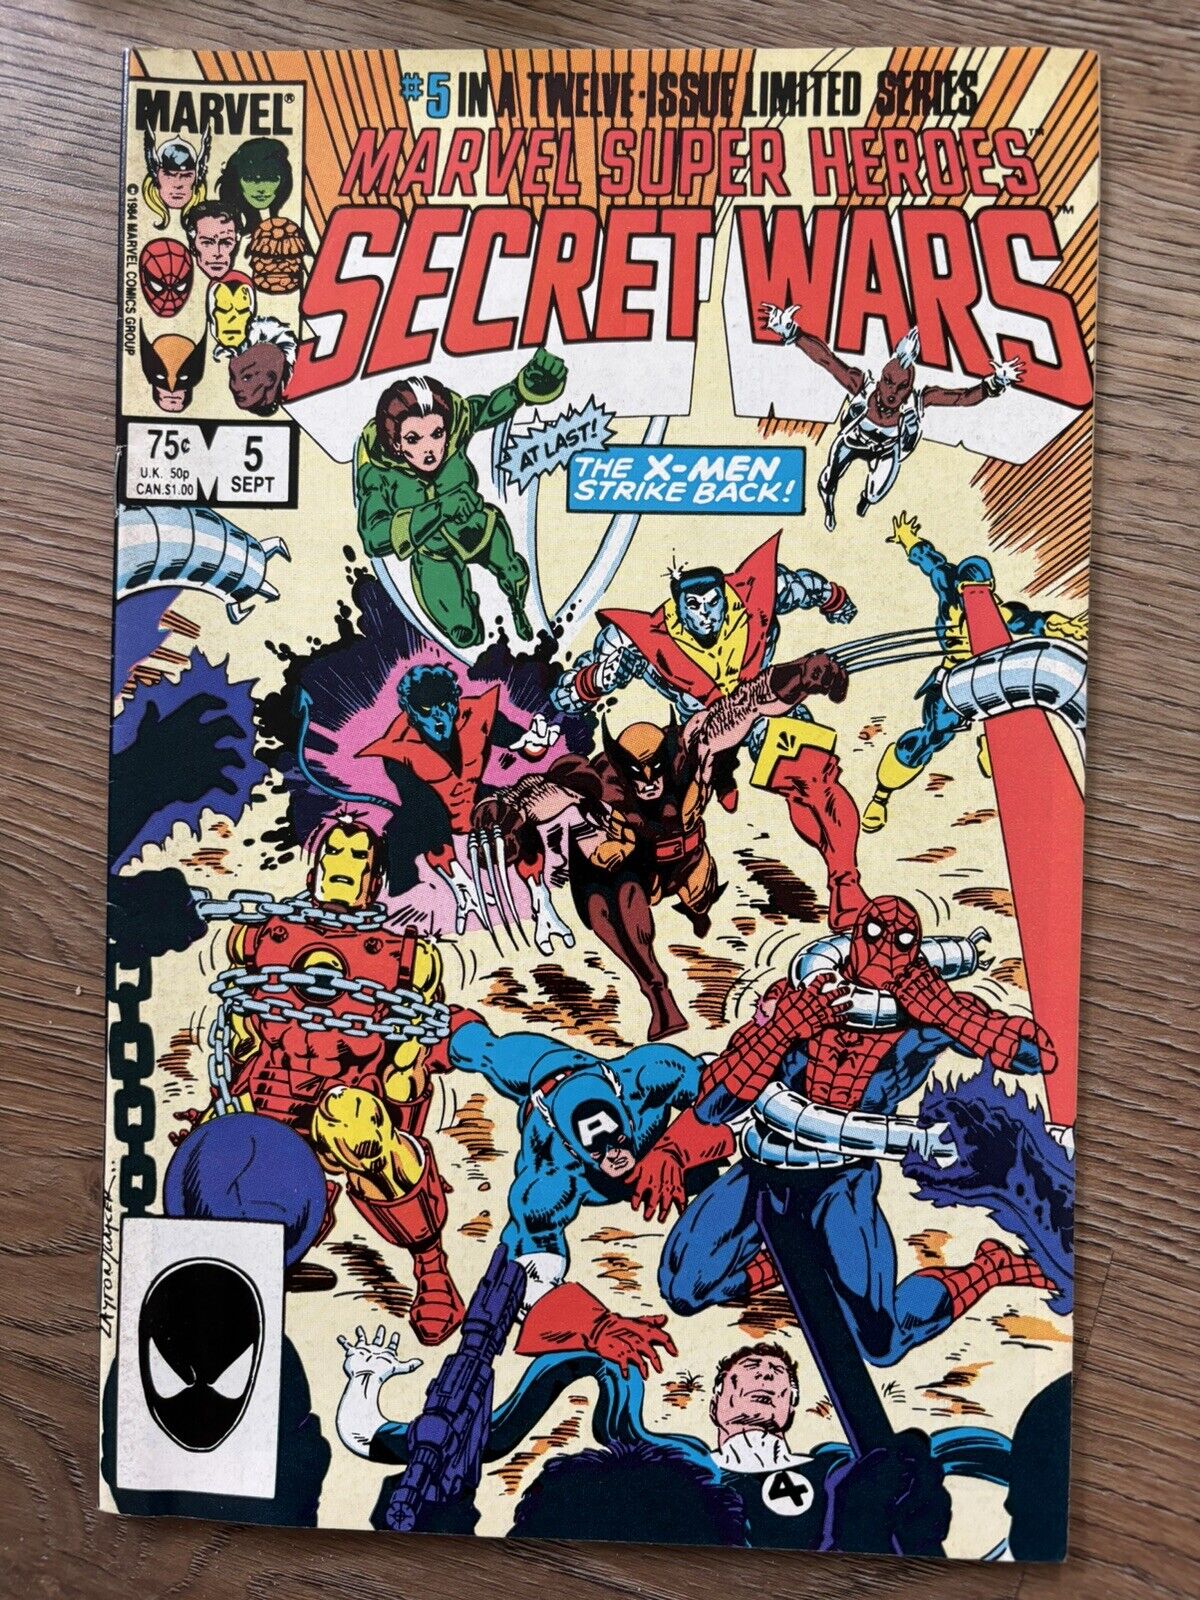 Marvel Super Heroes Secret Wars #5 of 12